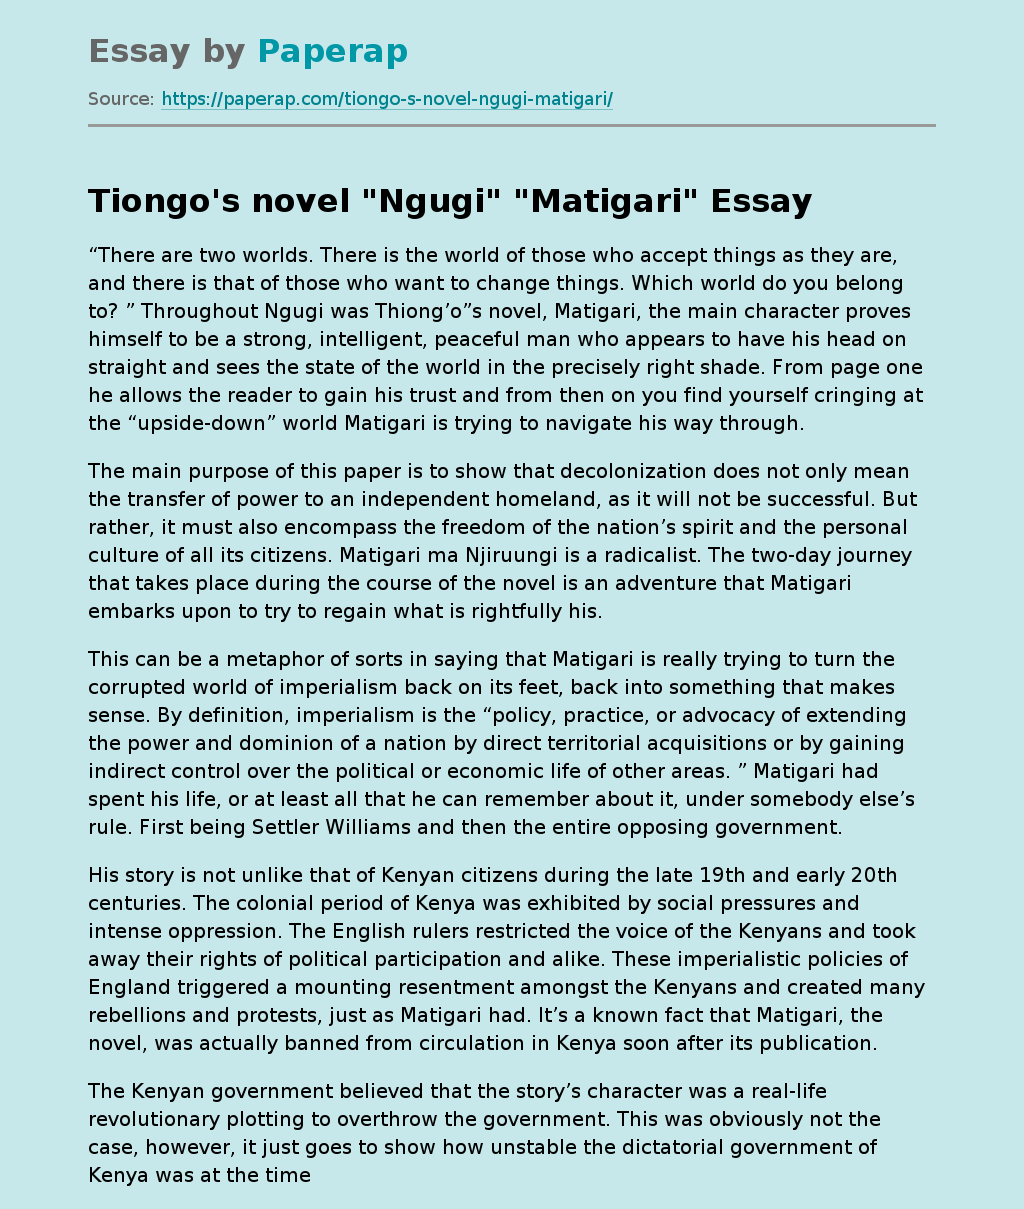 Tiongo's novel "Ngugi" "Matigari"